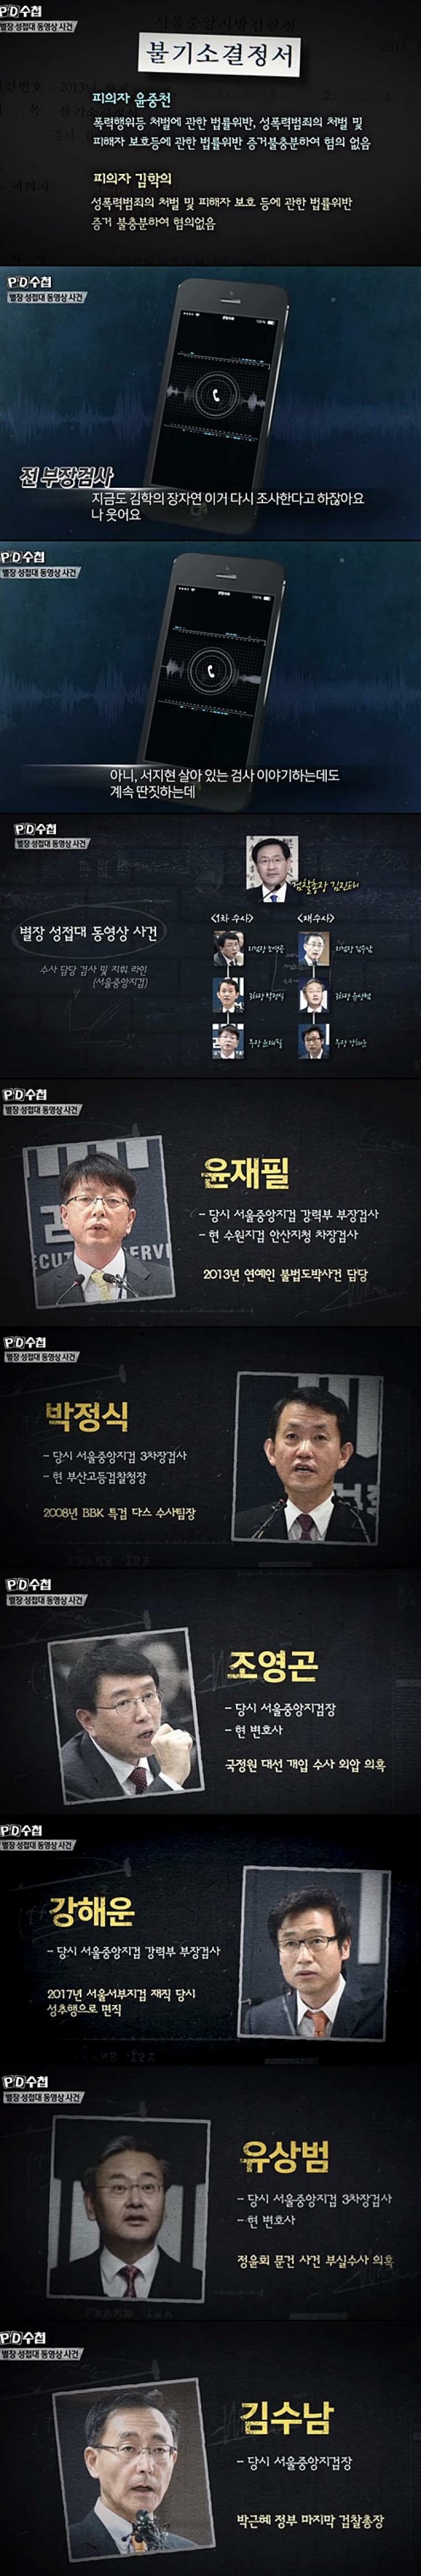 김학의 별장 성 접대 사건.